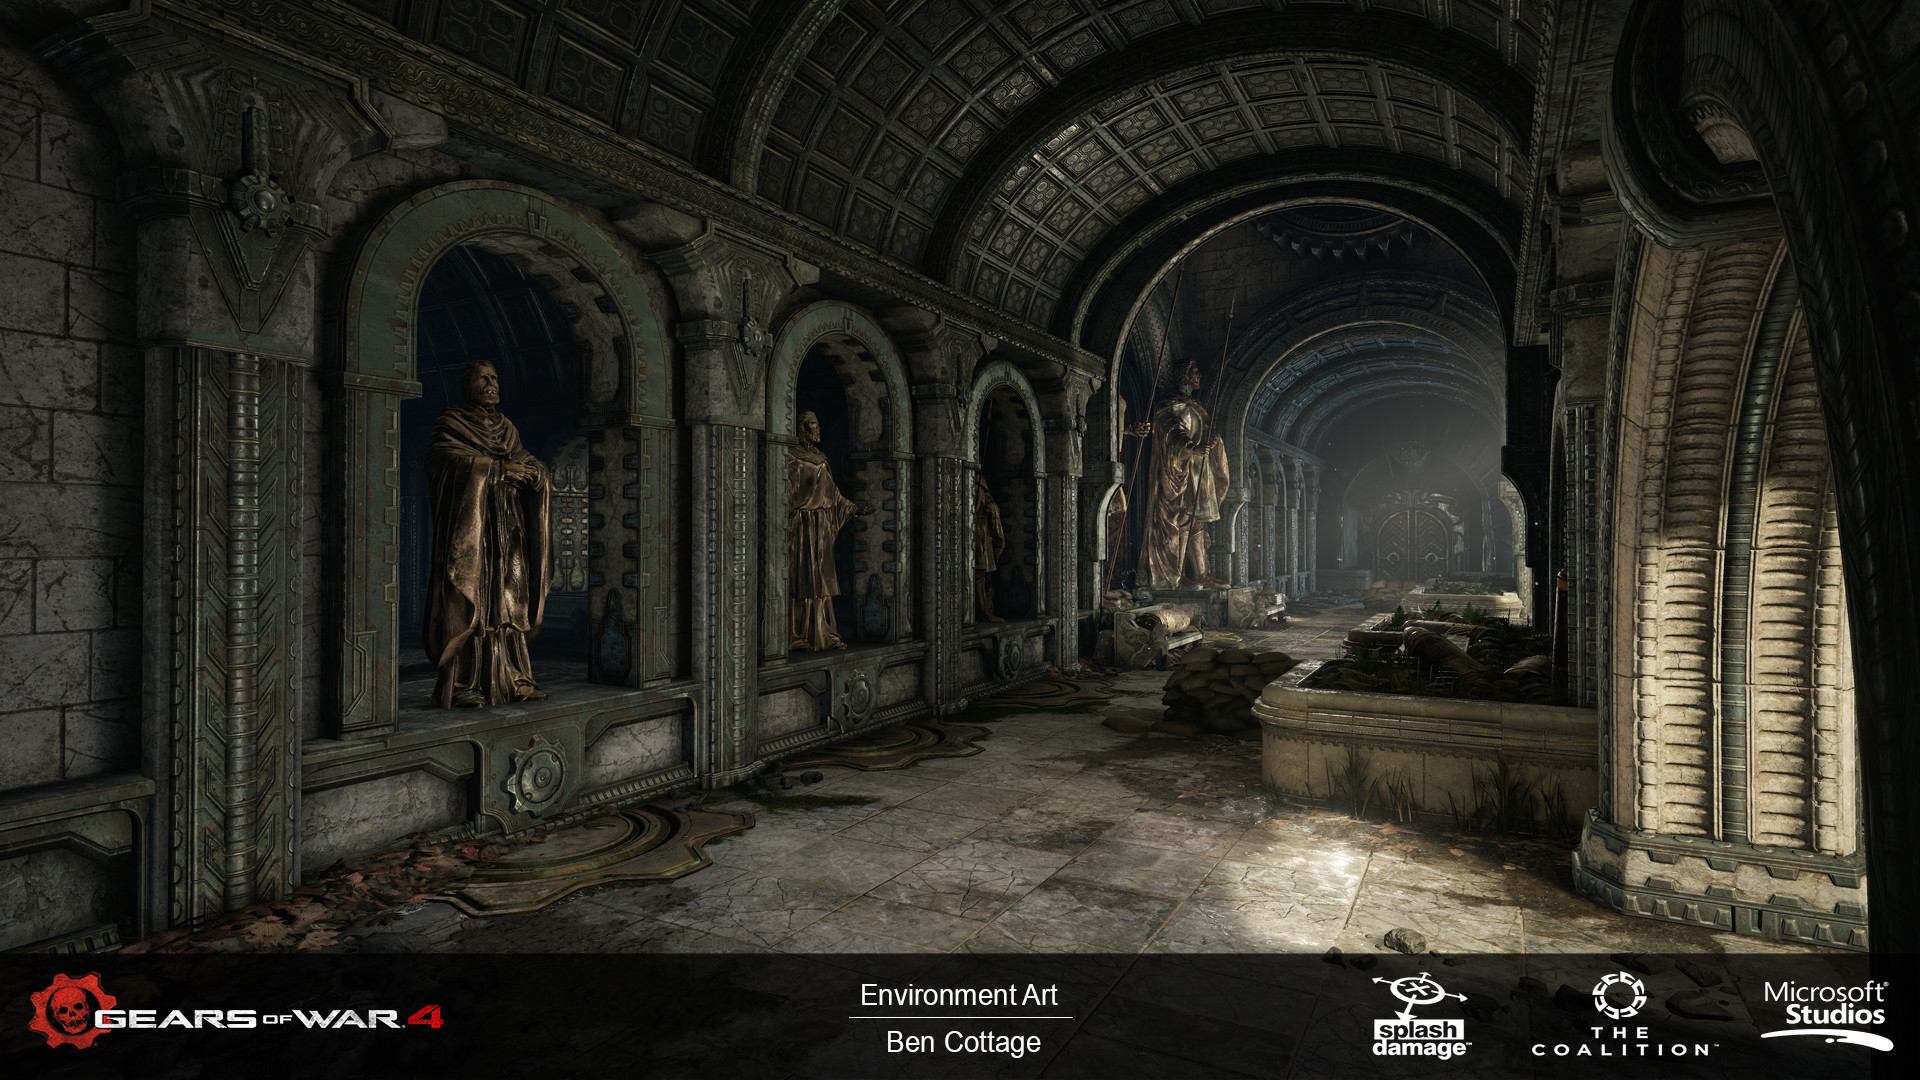 ArtStation - Gears of War 4 - Multiplayer Map: Checkout (DLC)